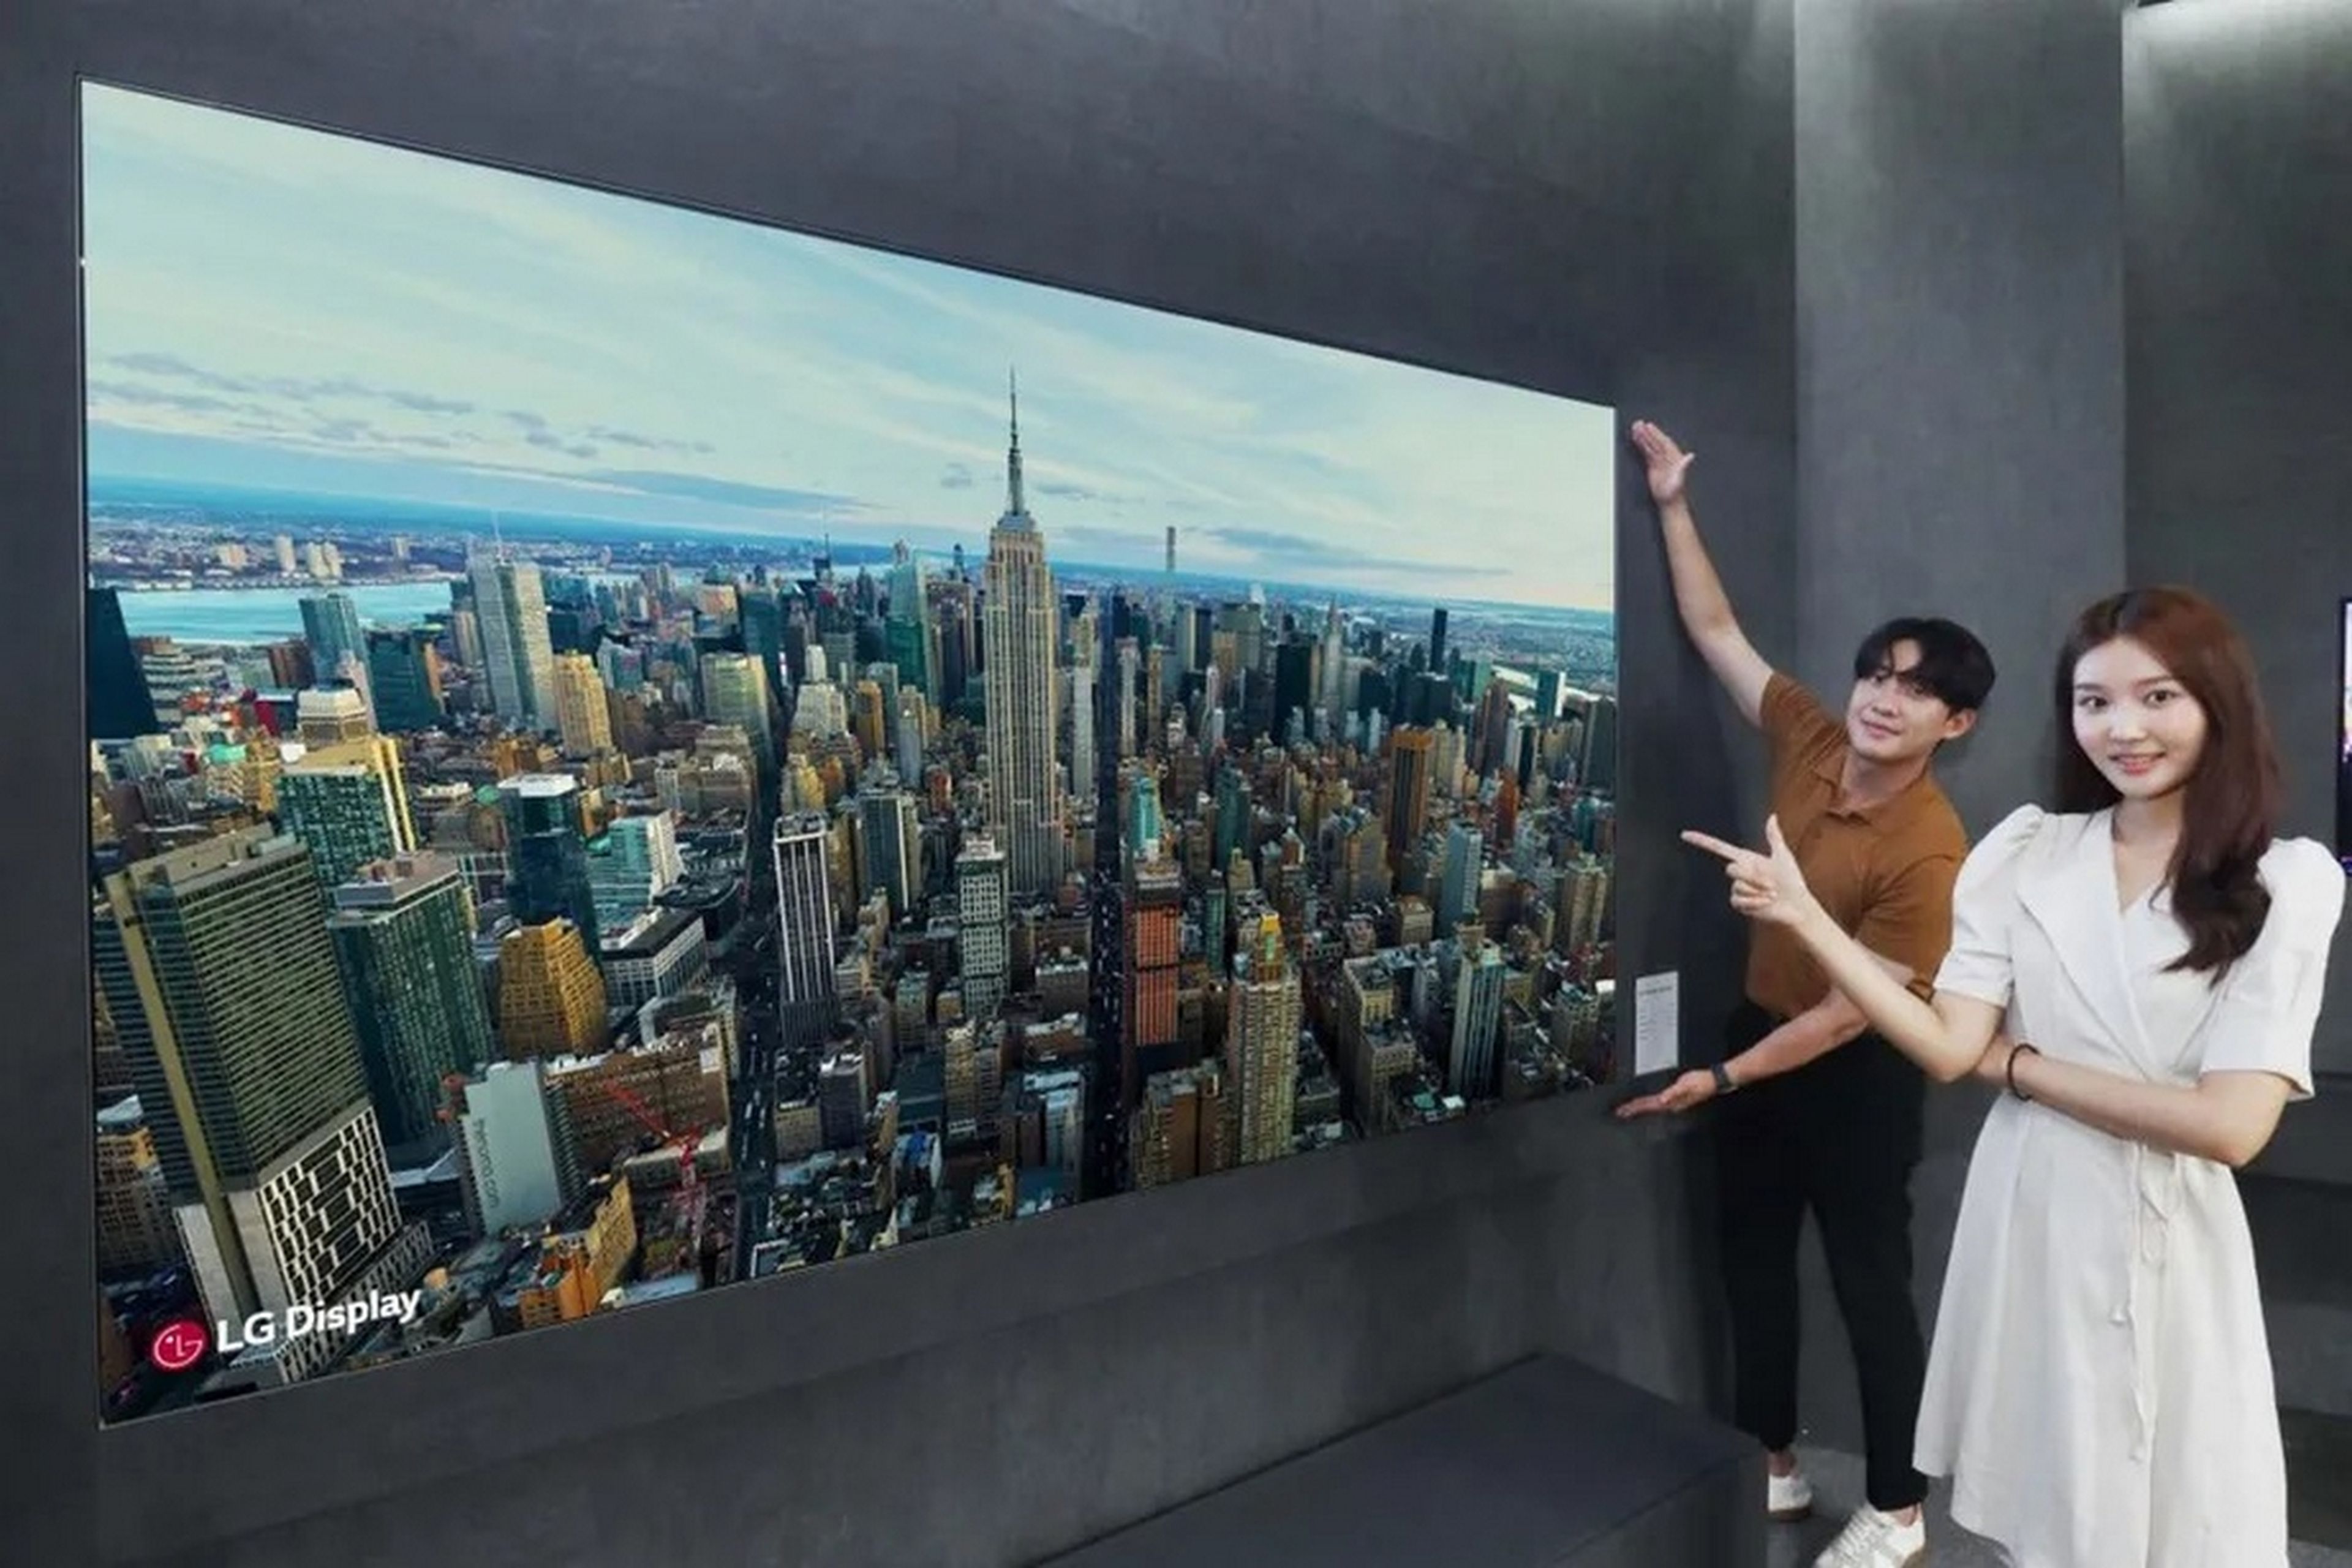 LG presenta un televisor OLED de 97 pulgadas sin altavoces, emite sonido 5.1 mediante vibraciones